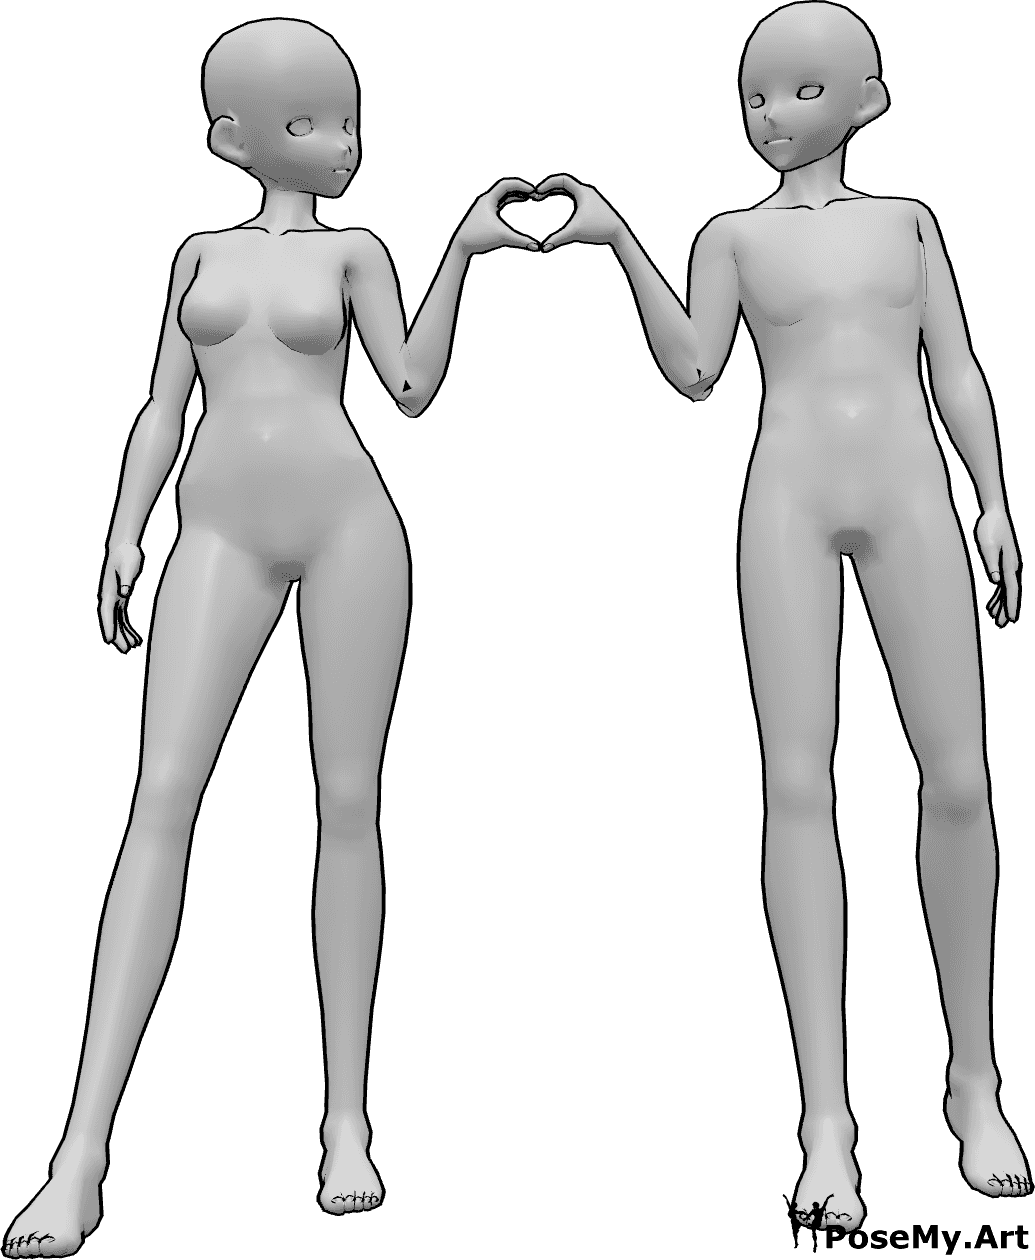 Référence des poses- Pose du cœur de la femme et de l'homme - Une femme et un homme d'animation se tiennent l'un à côté de l'autre et font un cœur avec leurs mains.